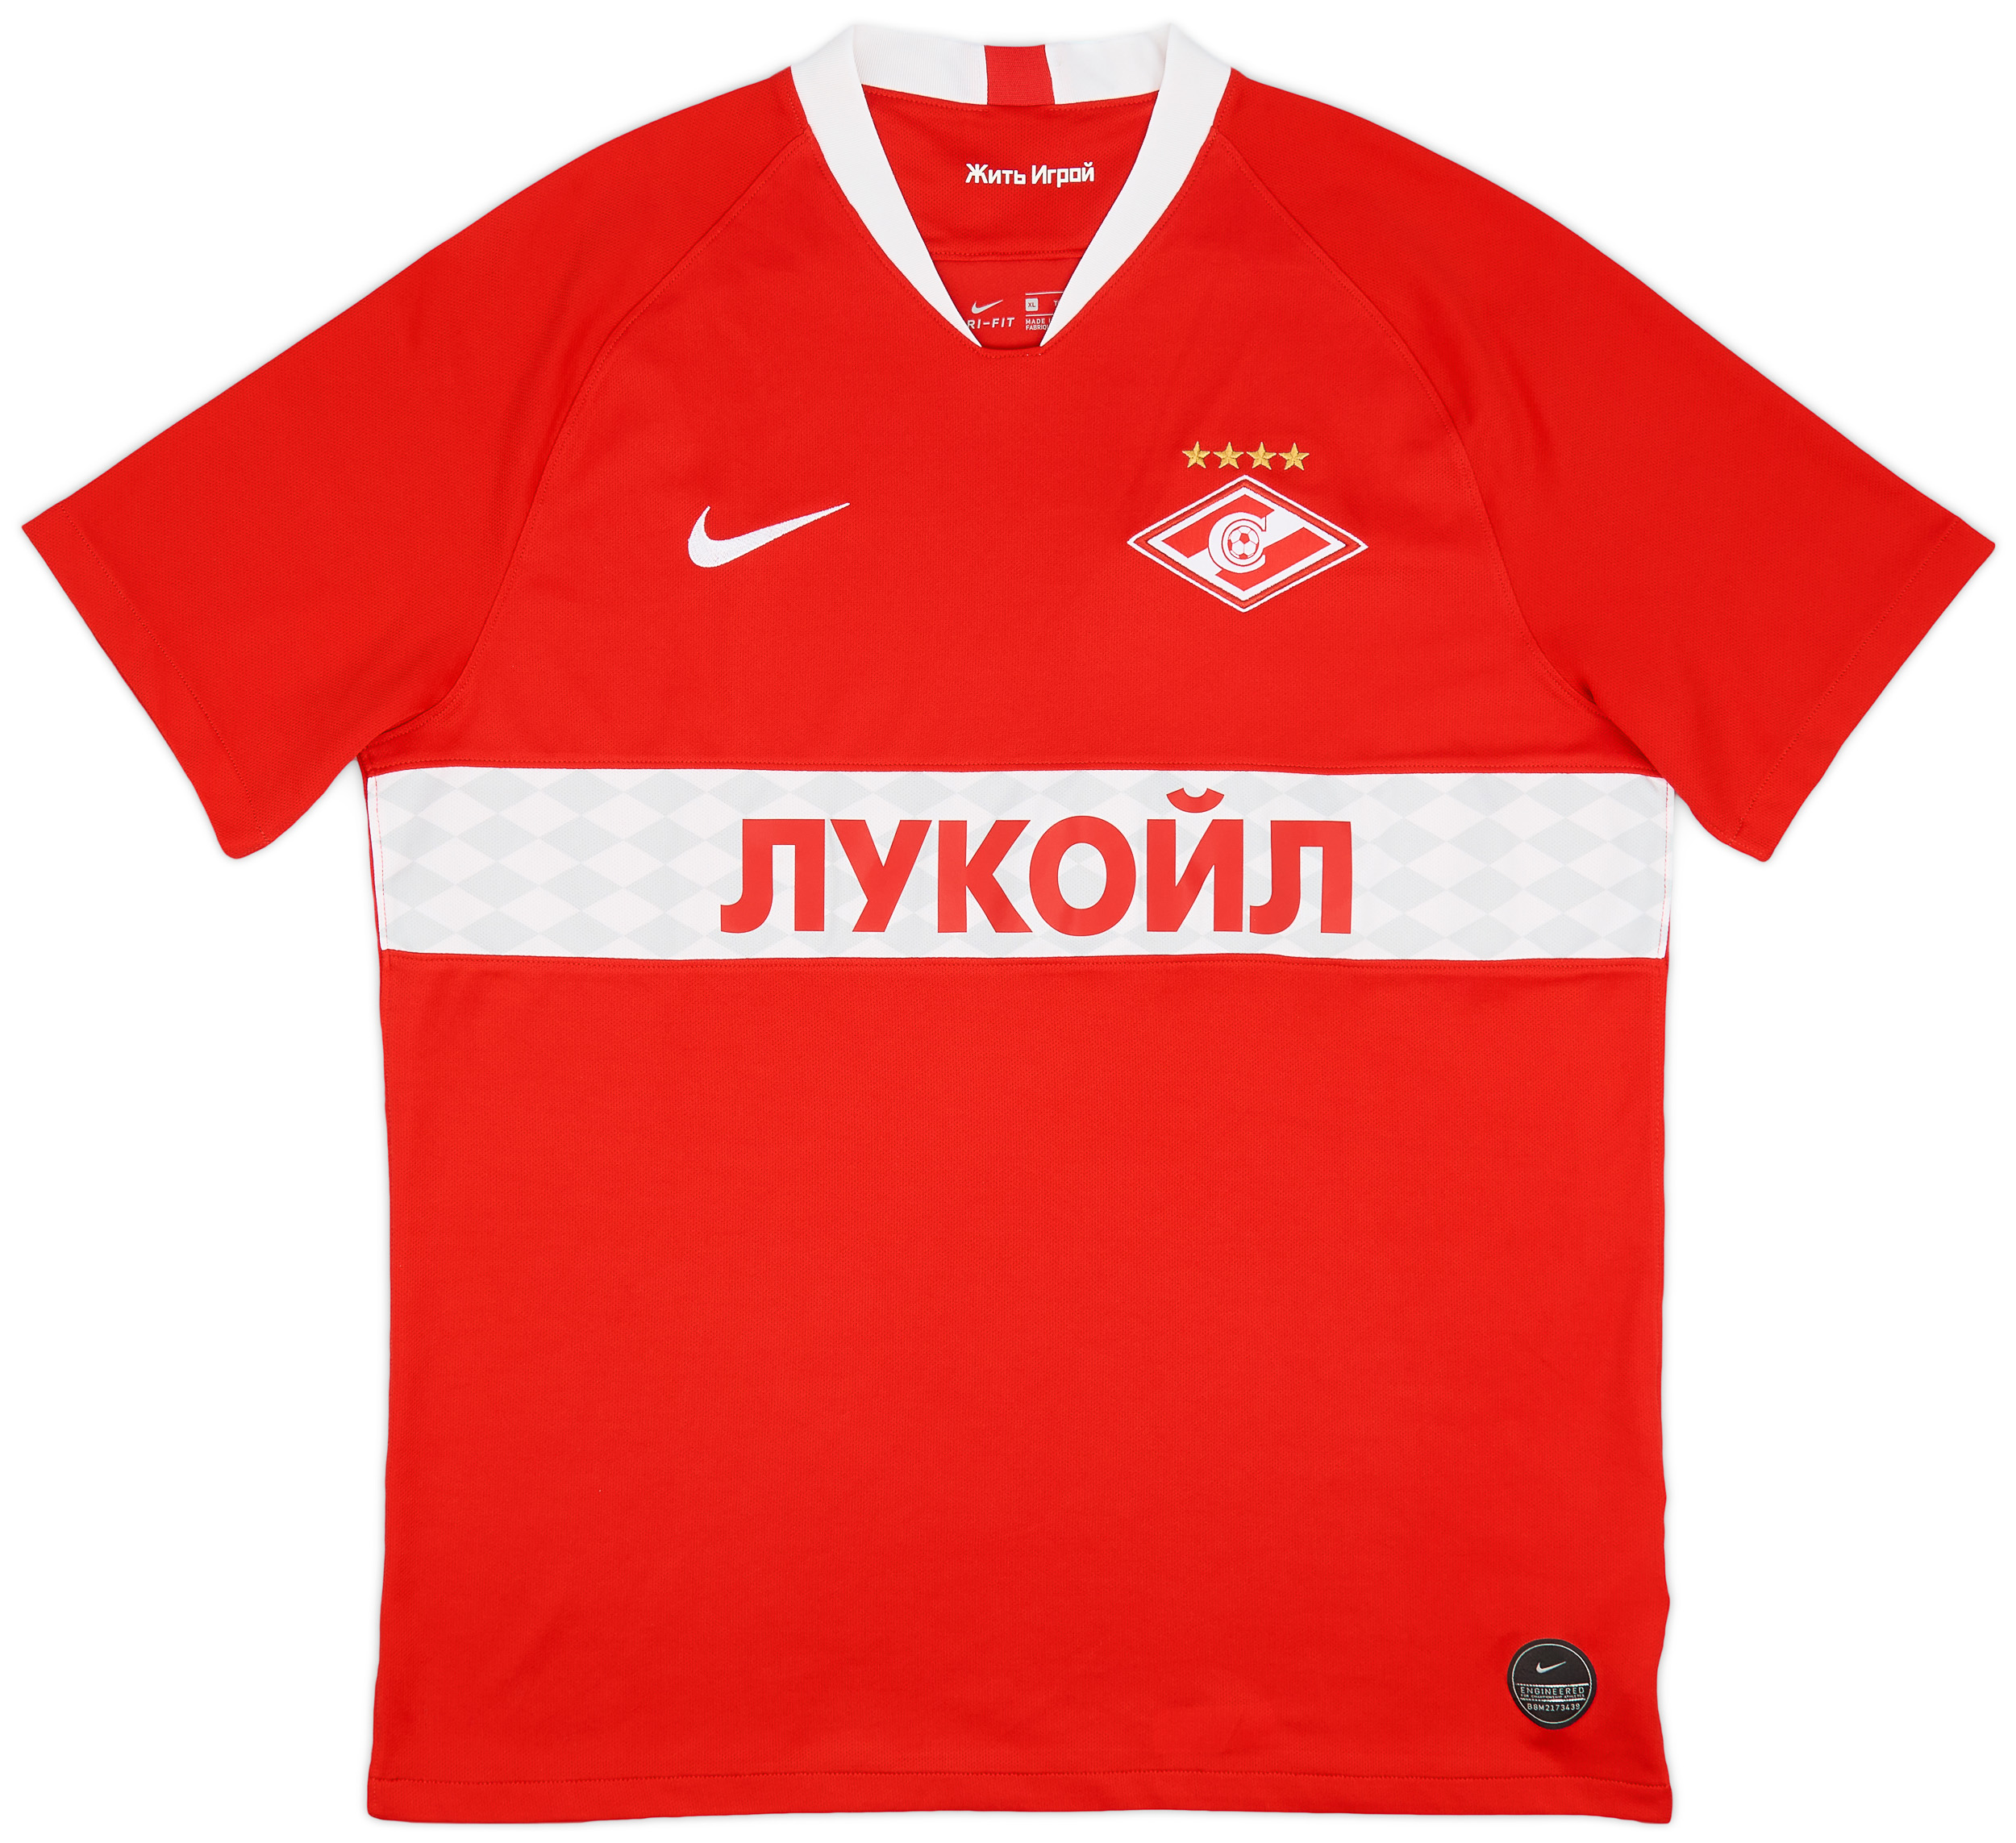 Spartak Moscow  home shirt  (Original)